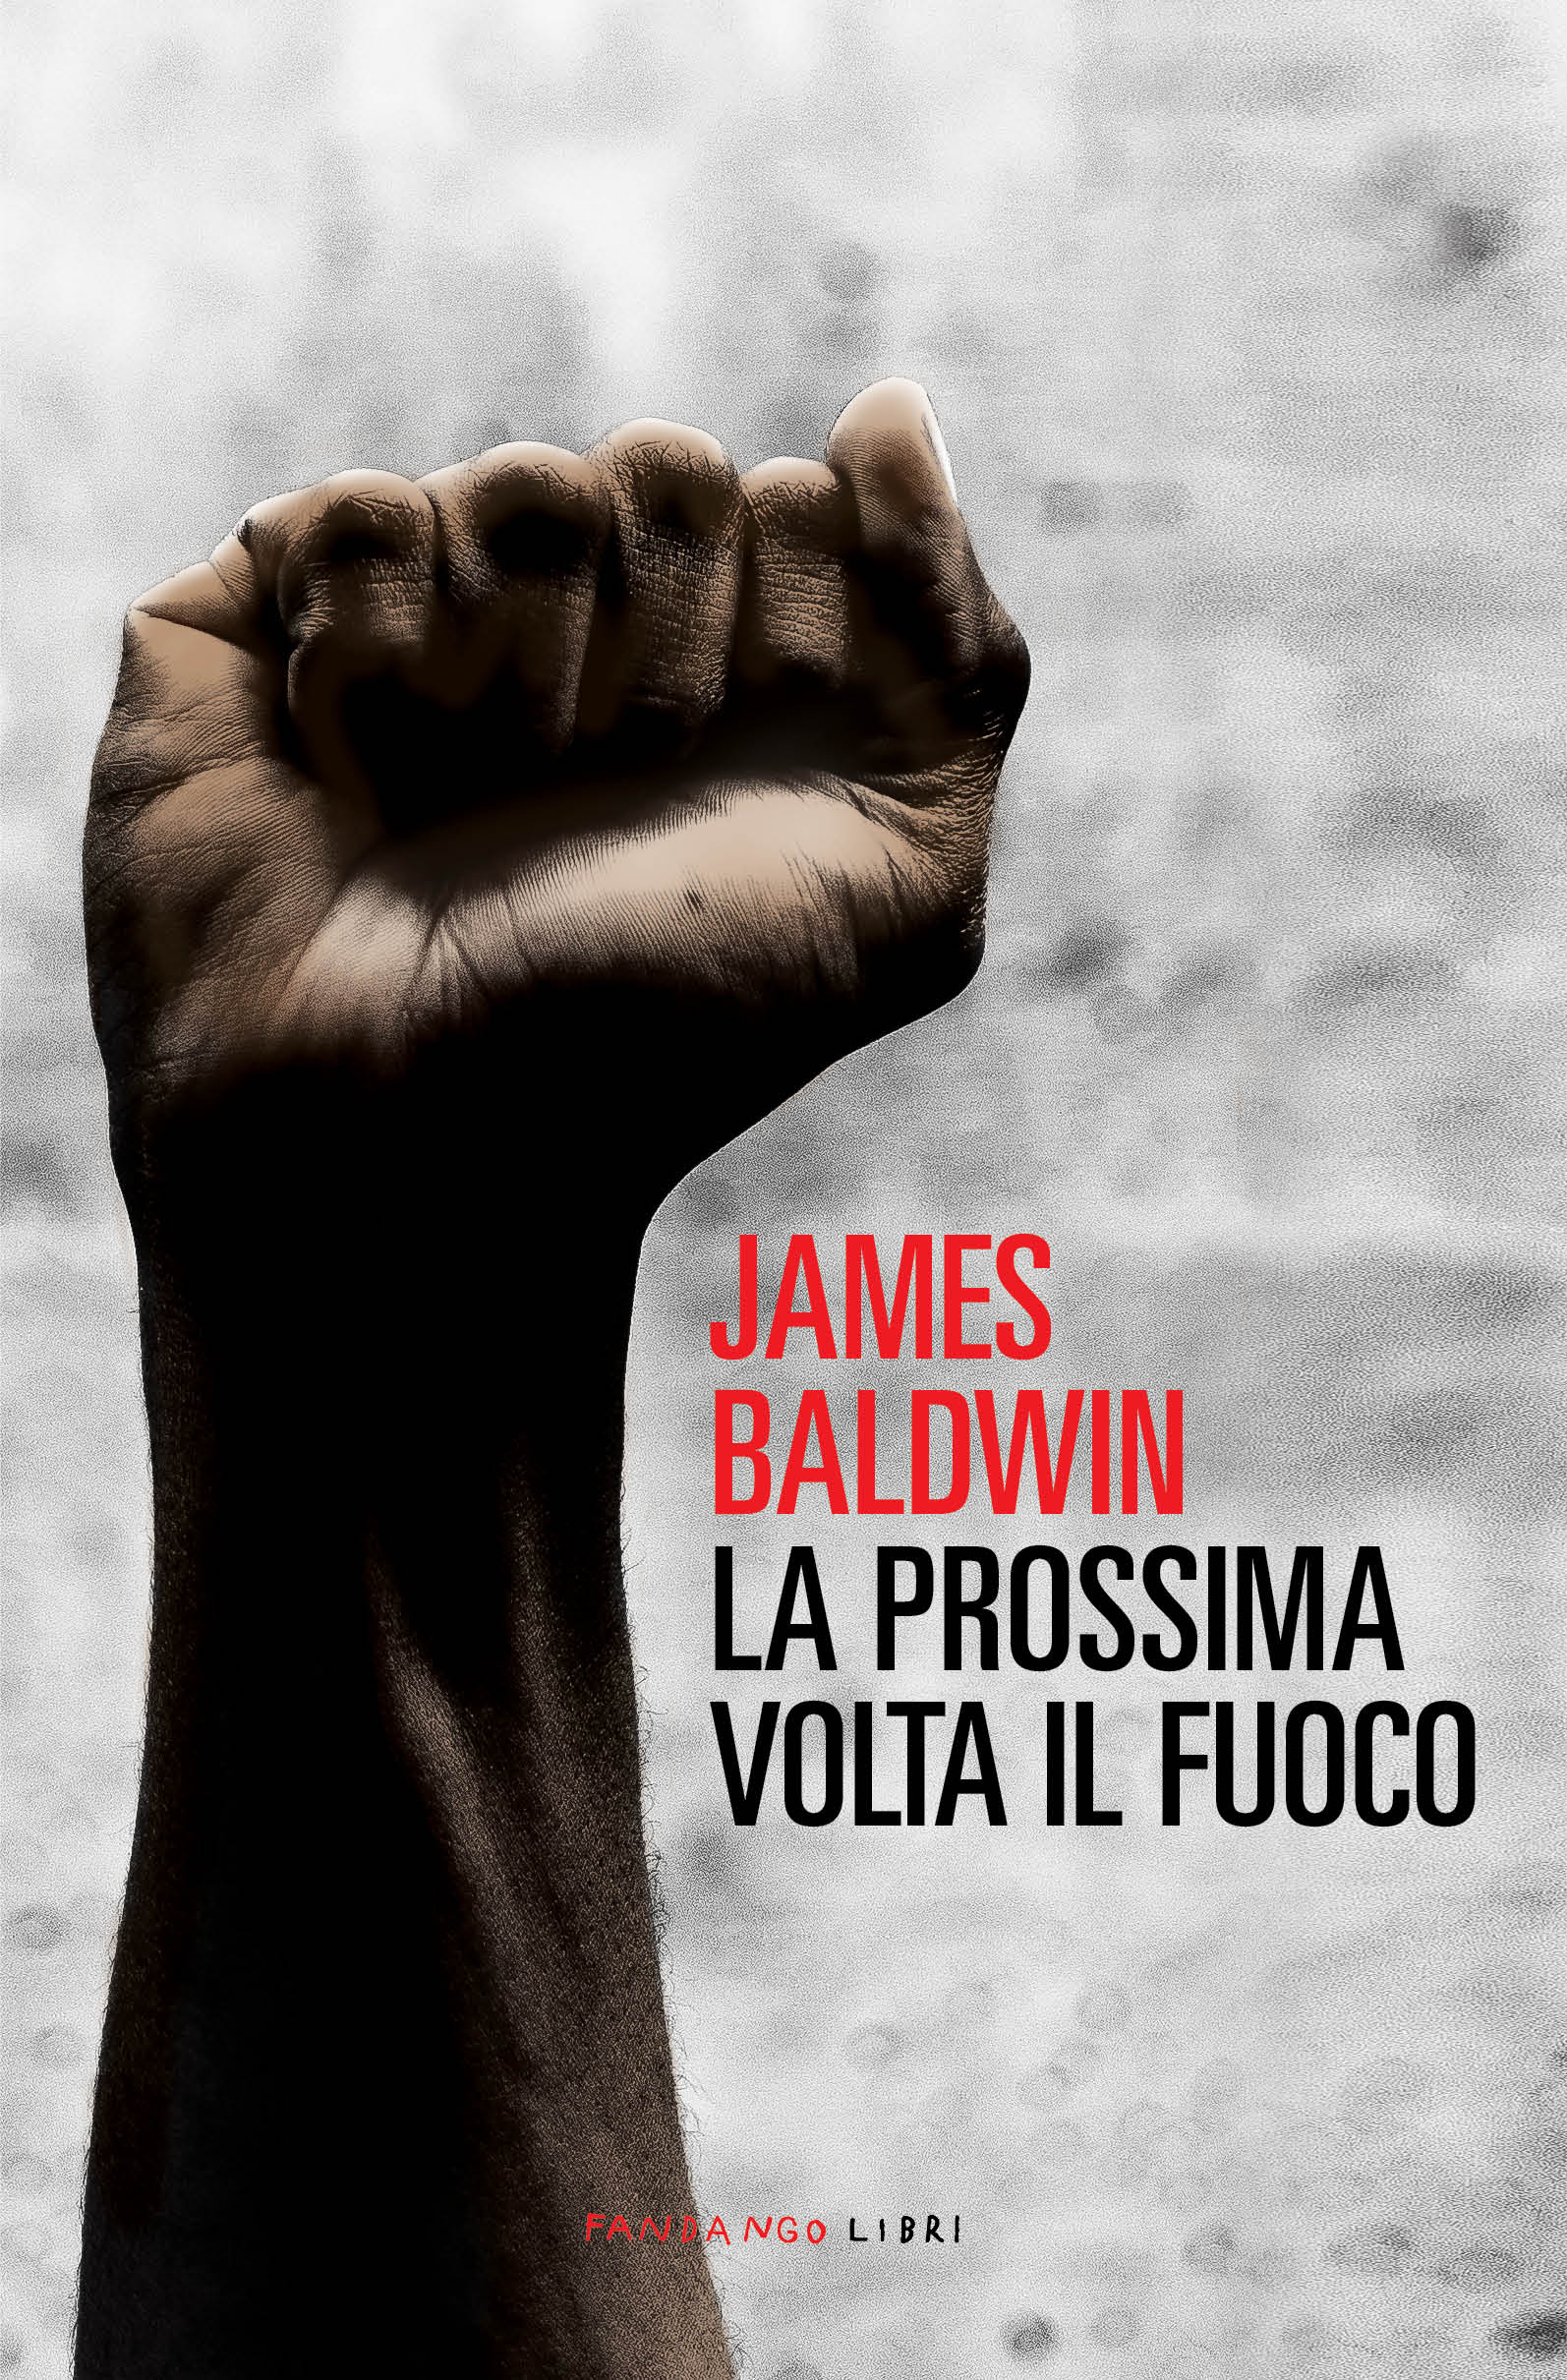 “La prossima volta il fuoco” di James Baldwin, una delle più appassionanti e autorevoli indagini sui rapporti interrazziali